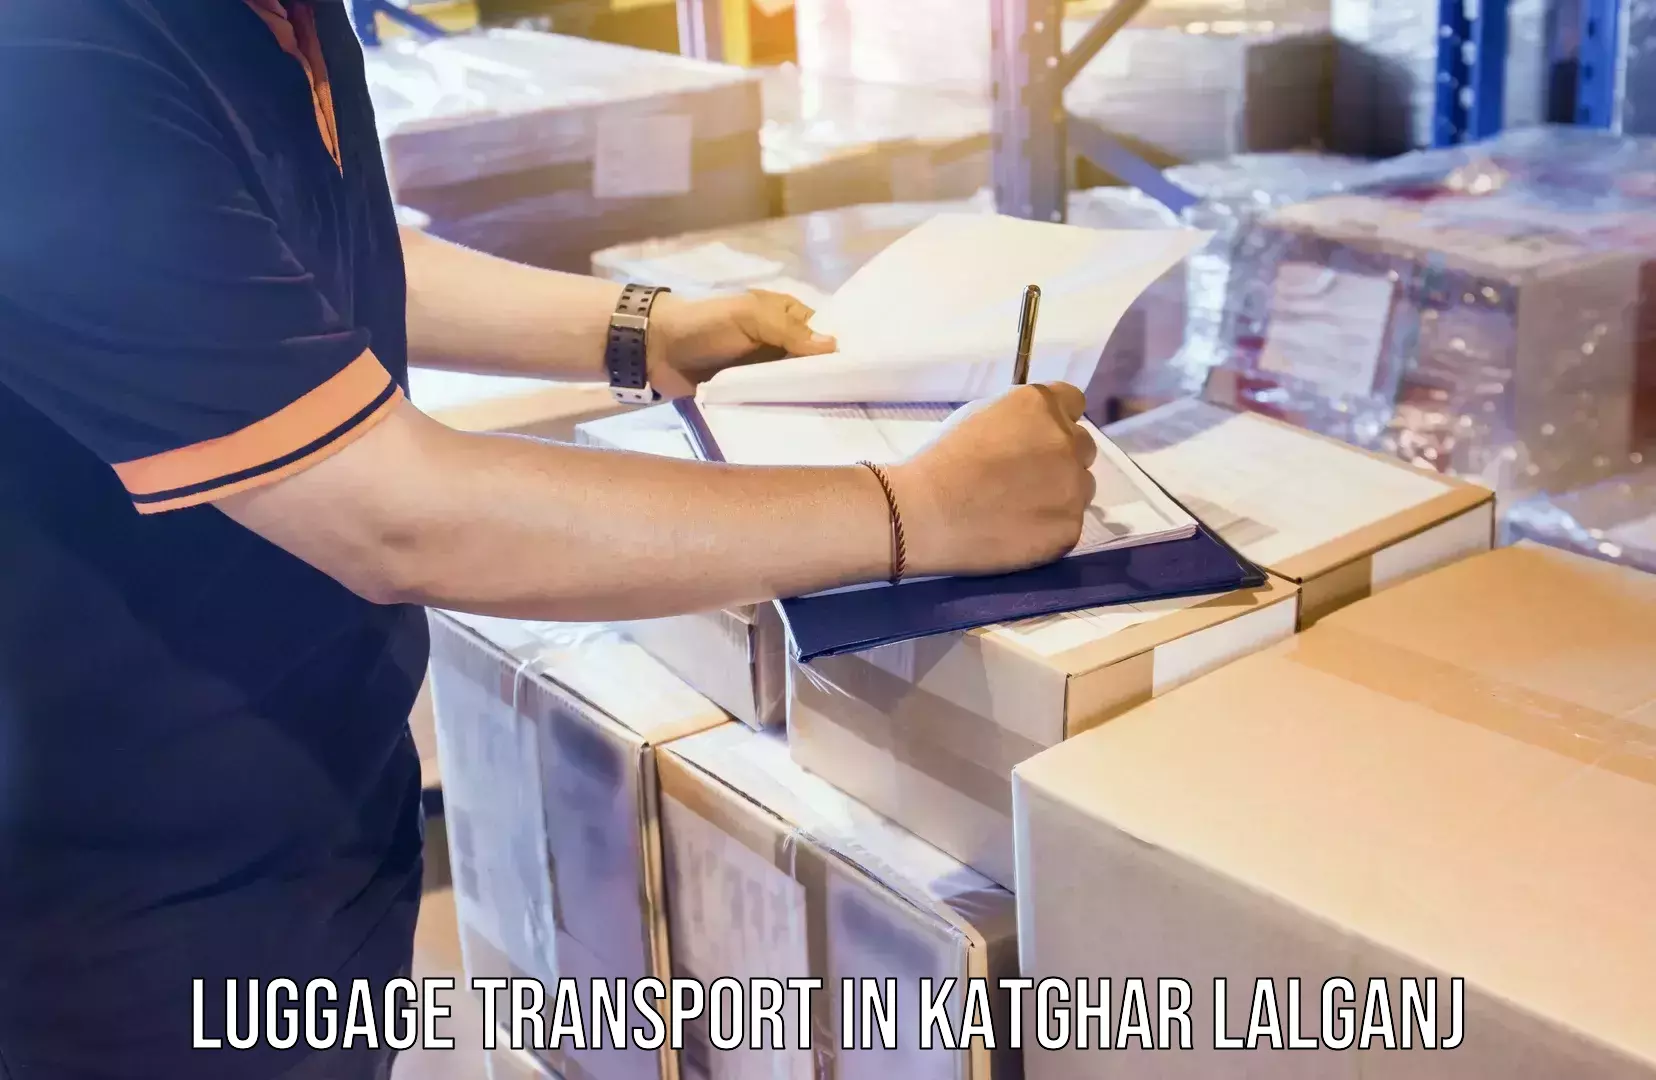 Luggage shipment logistics in Katghar Lalganj